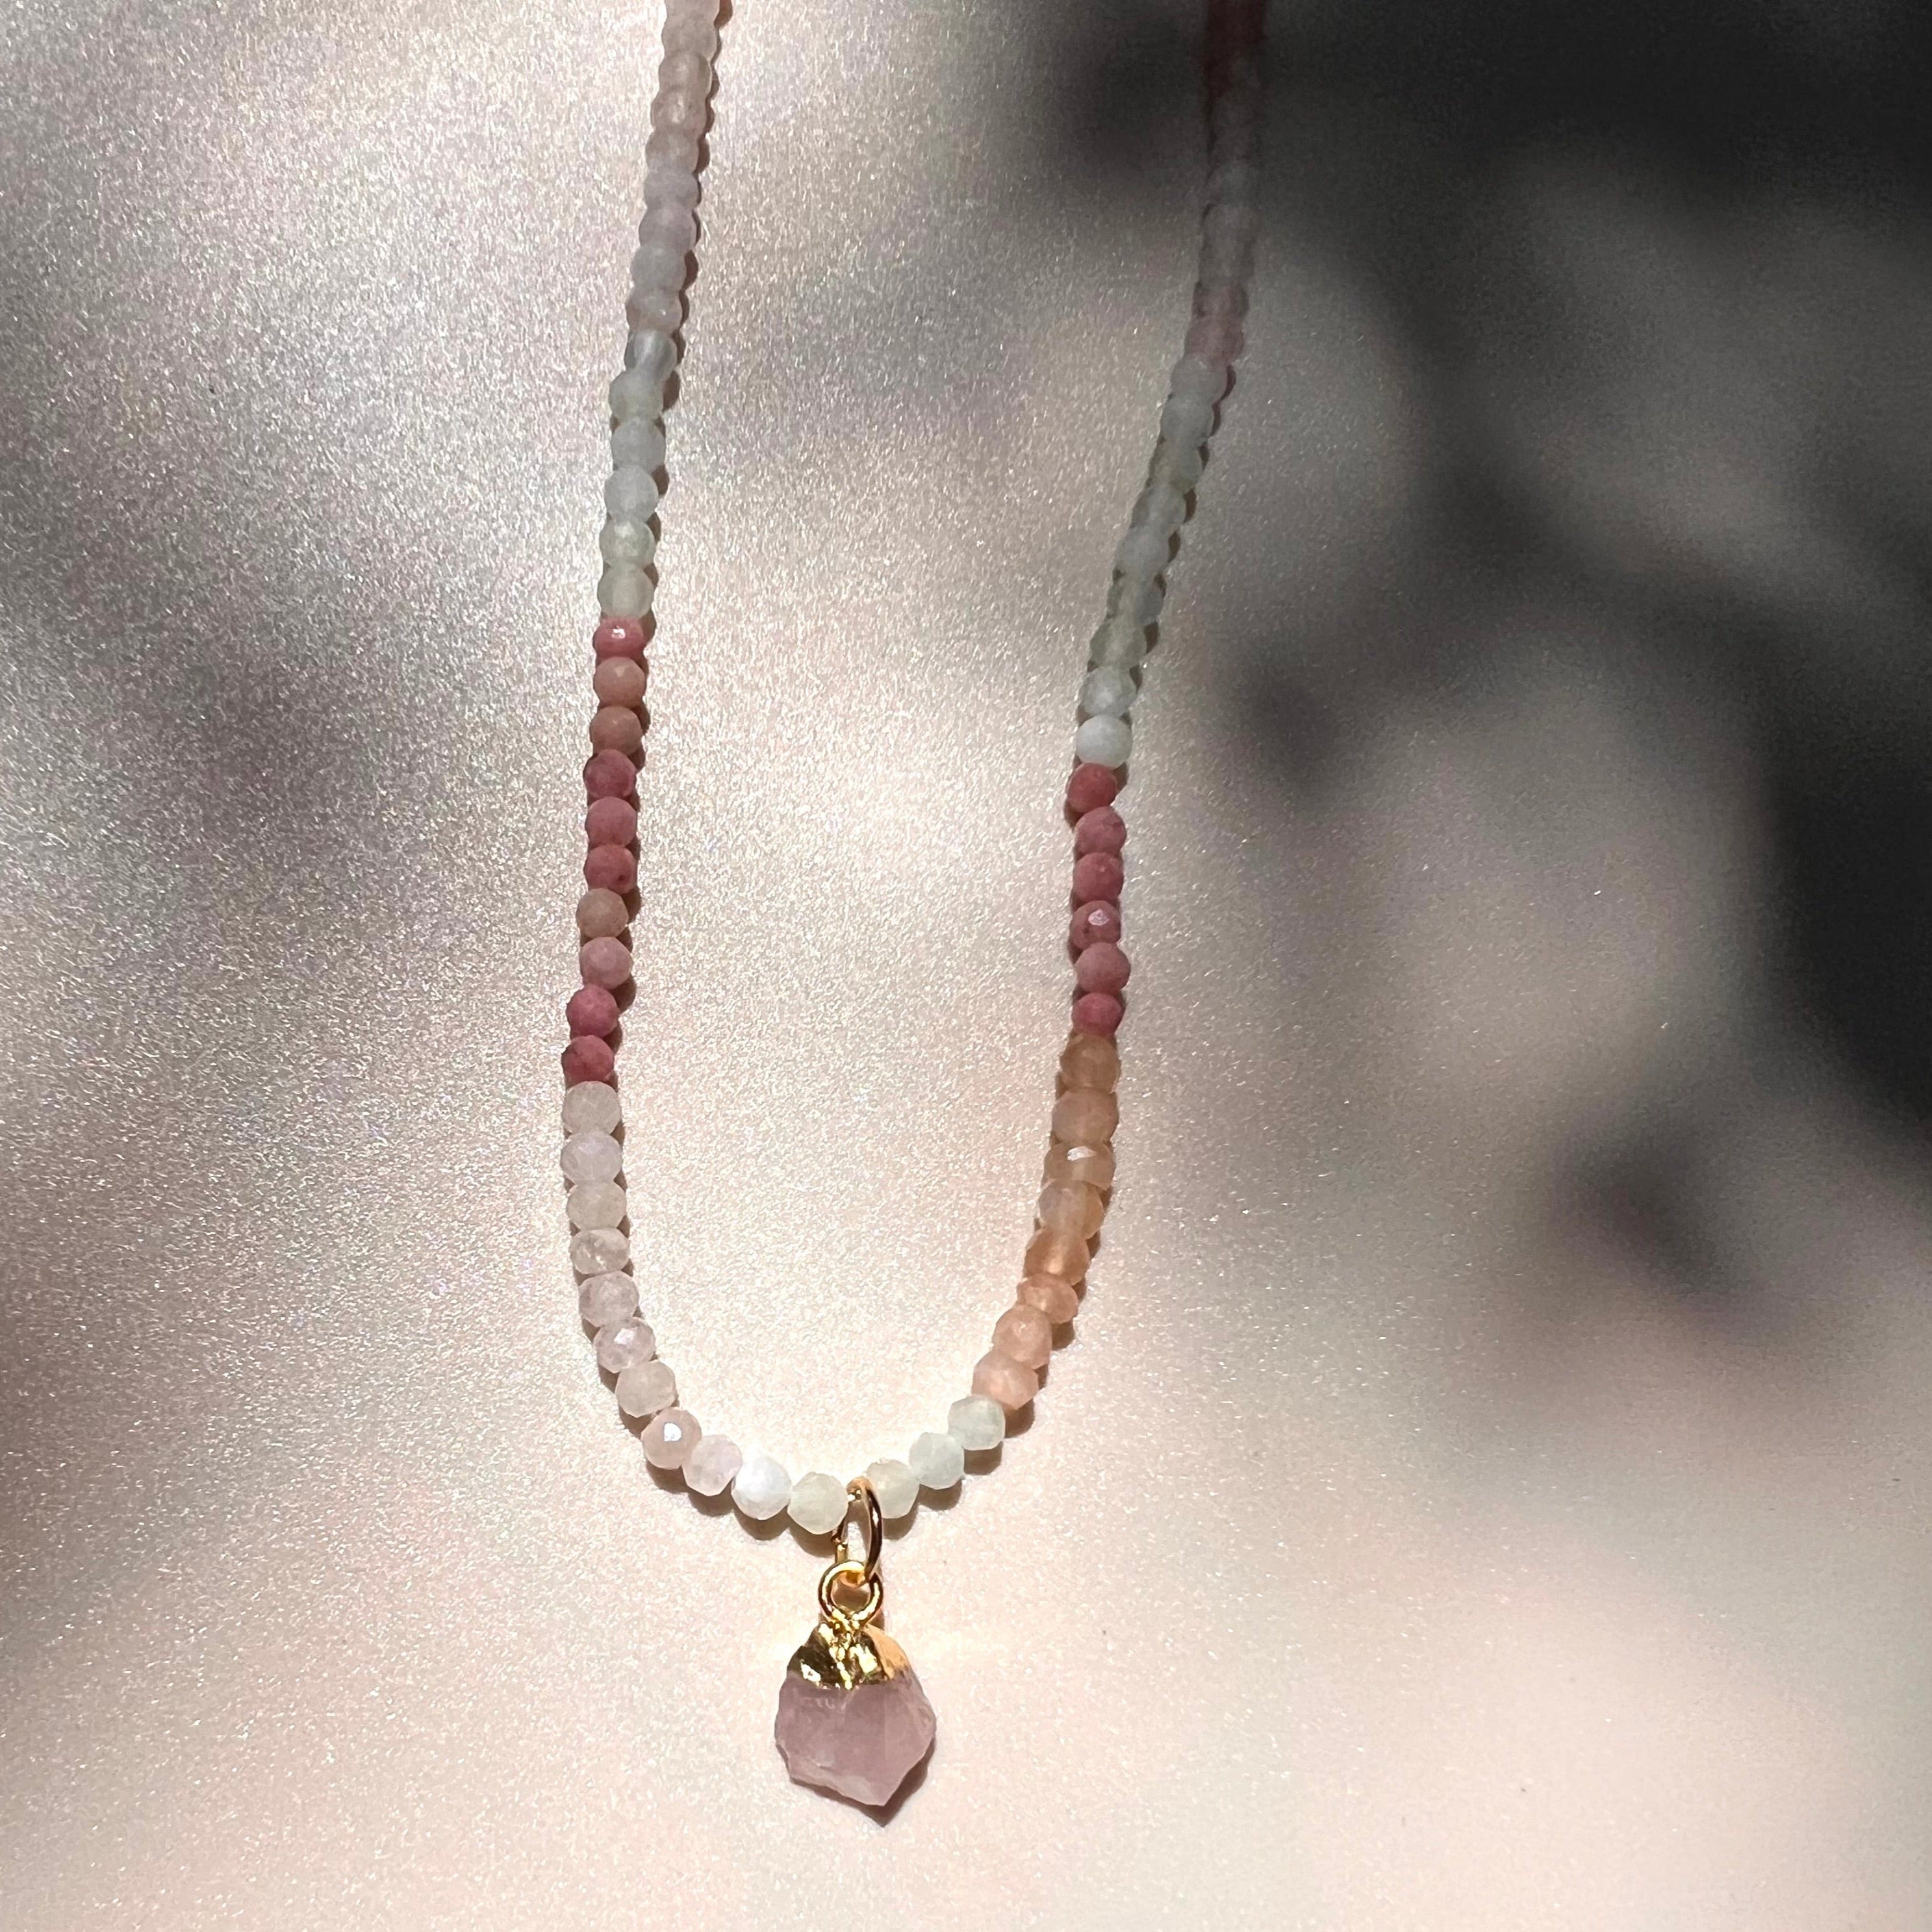 Blossom necklace with rose Quartz 